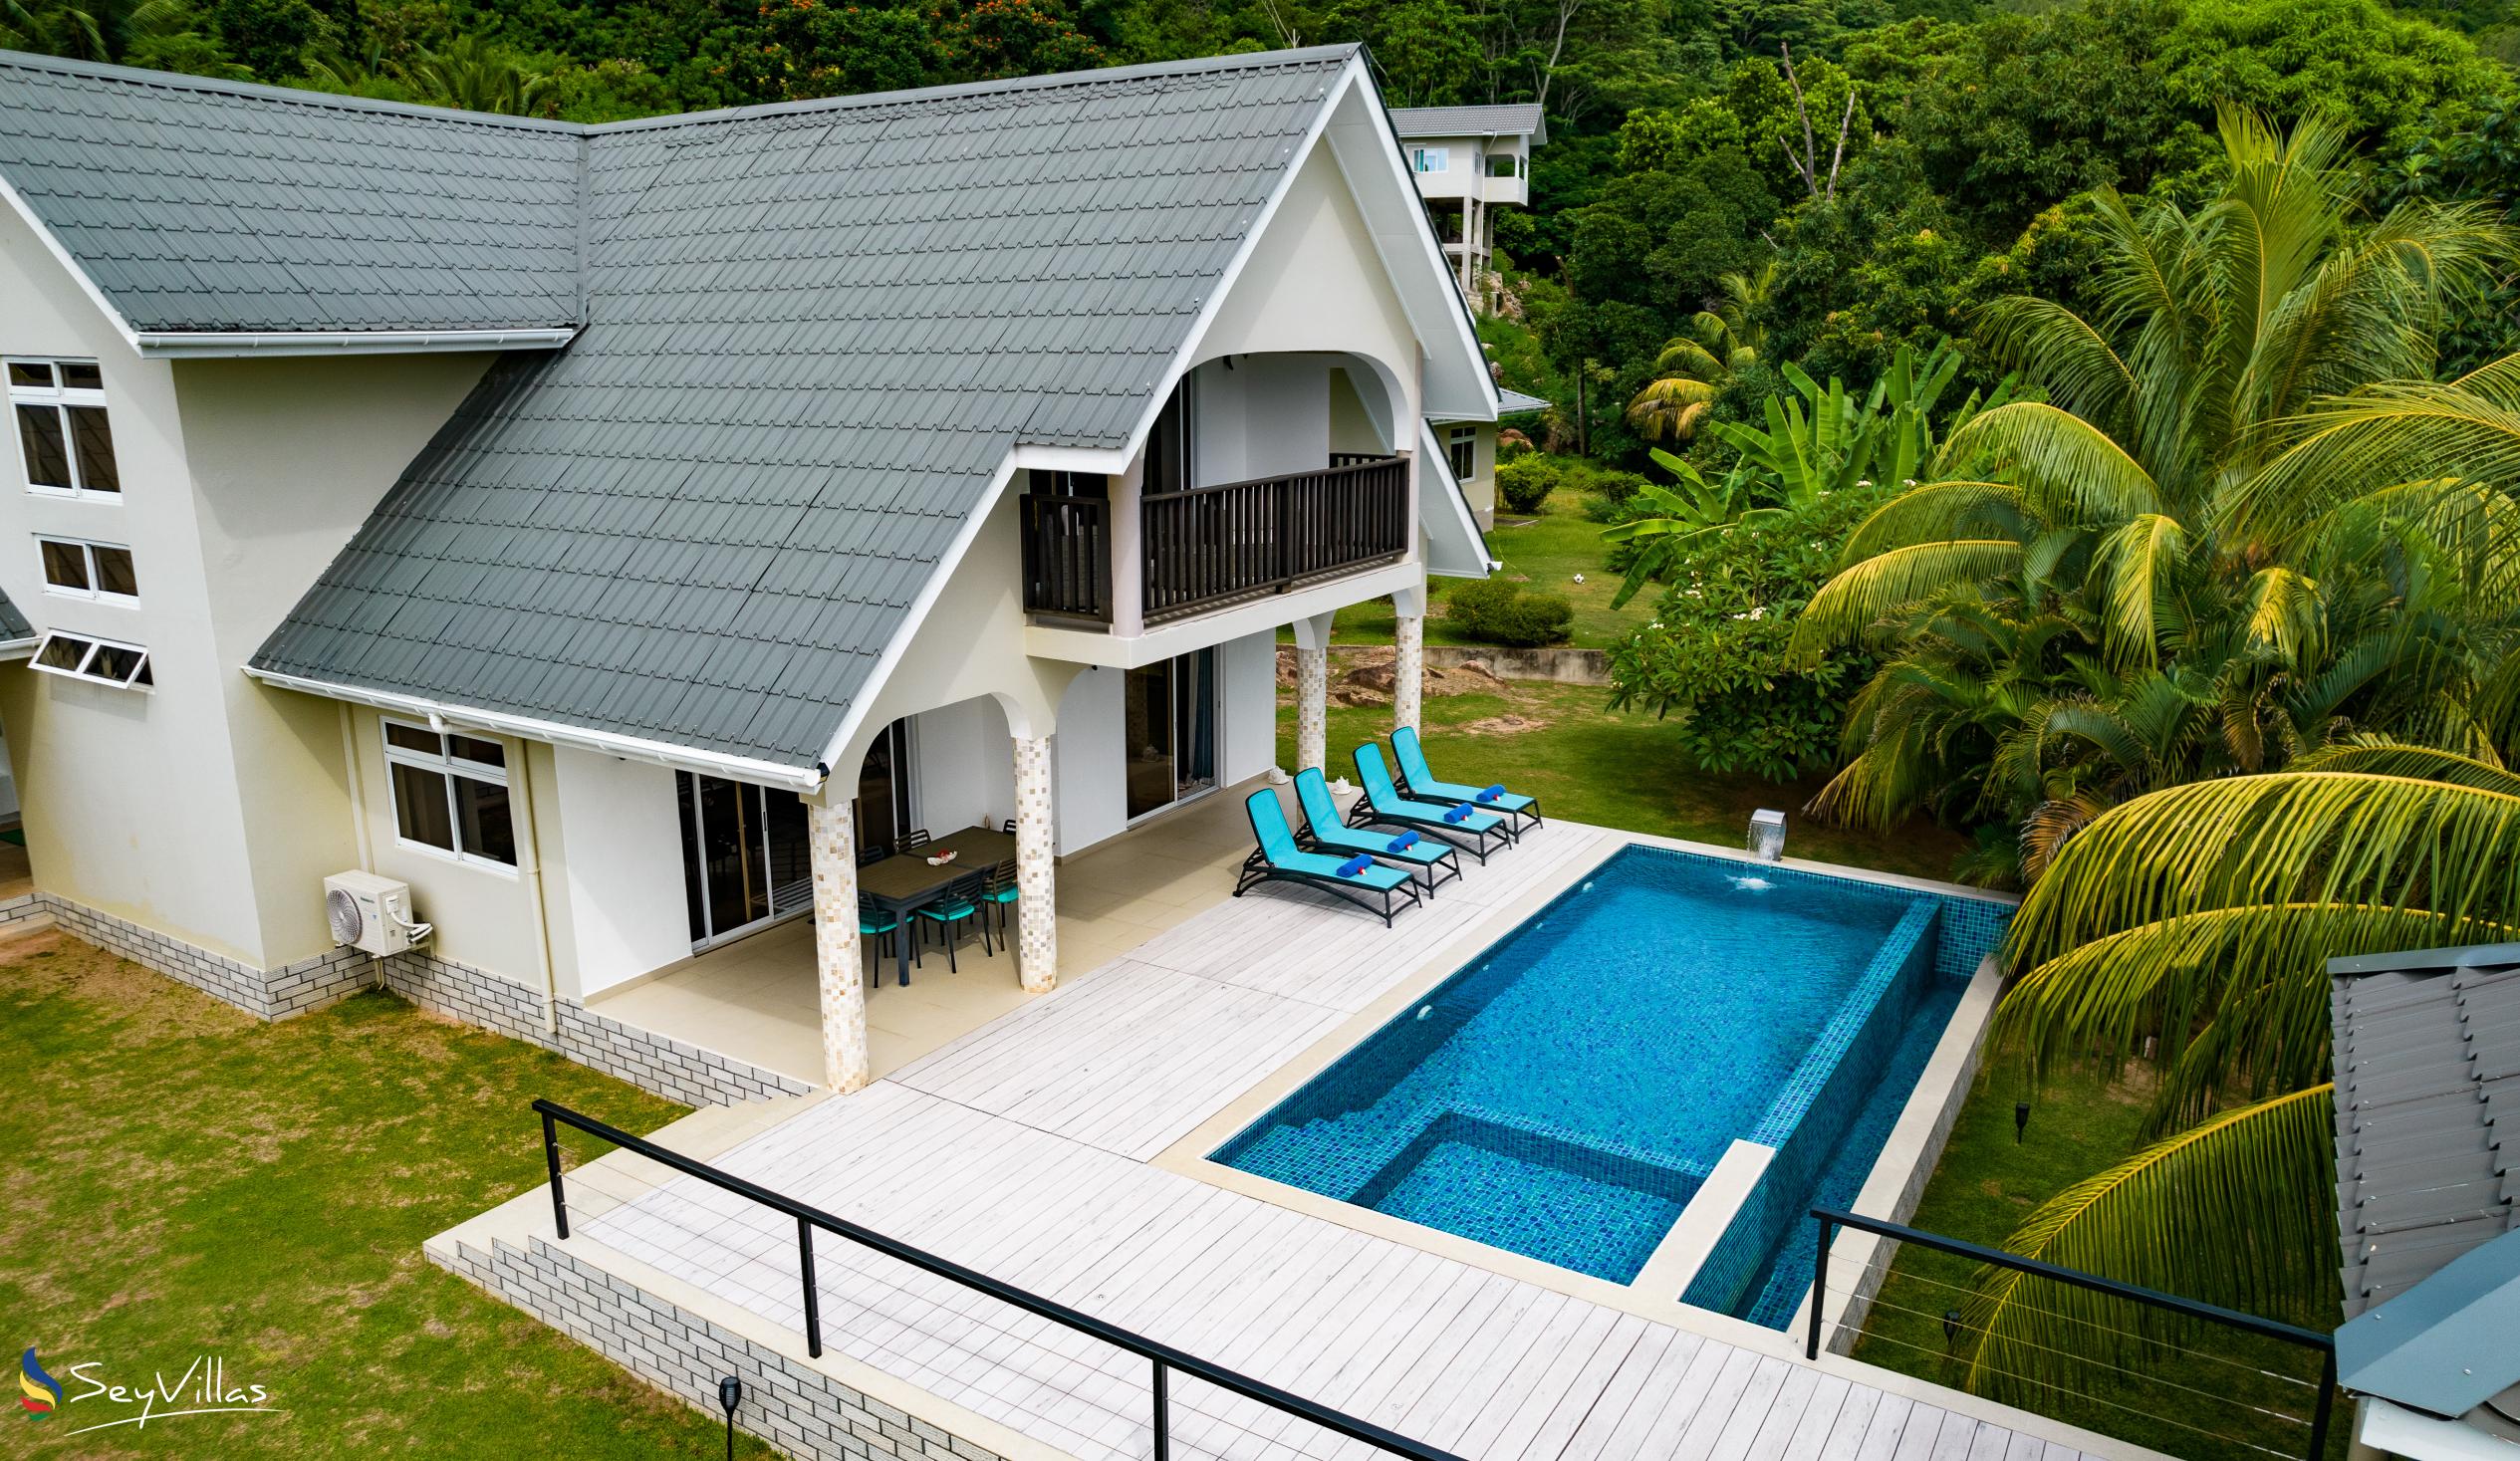 Foto 29: Tranquility Villa - Aussenbereich - Praslin (Seychellen)